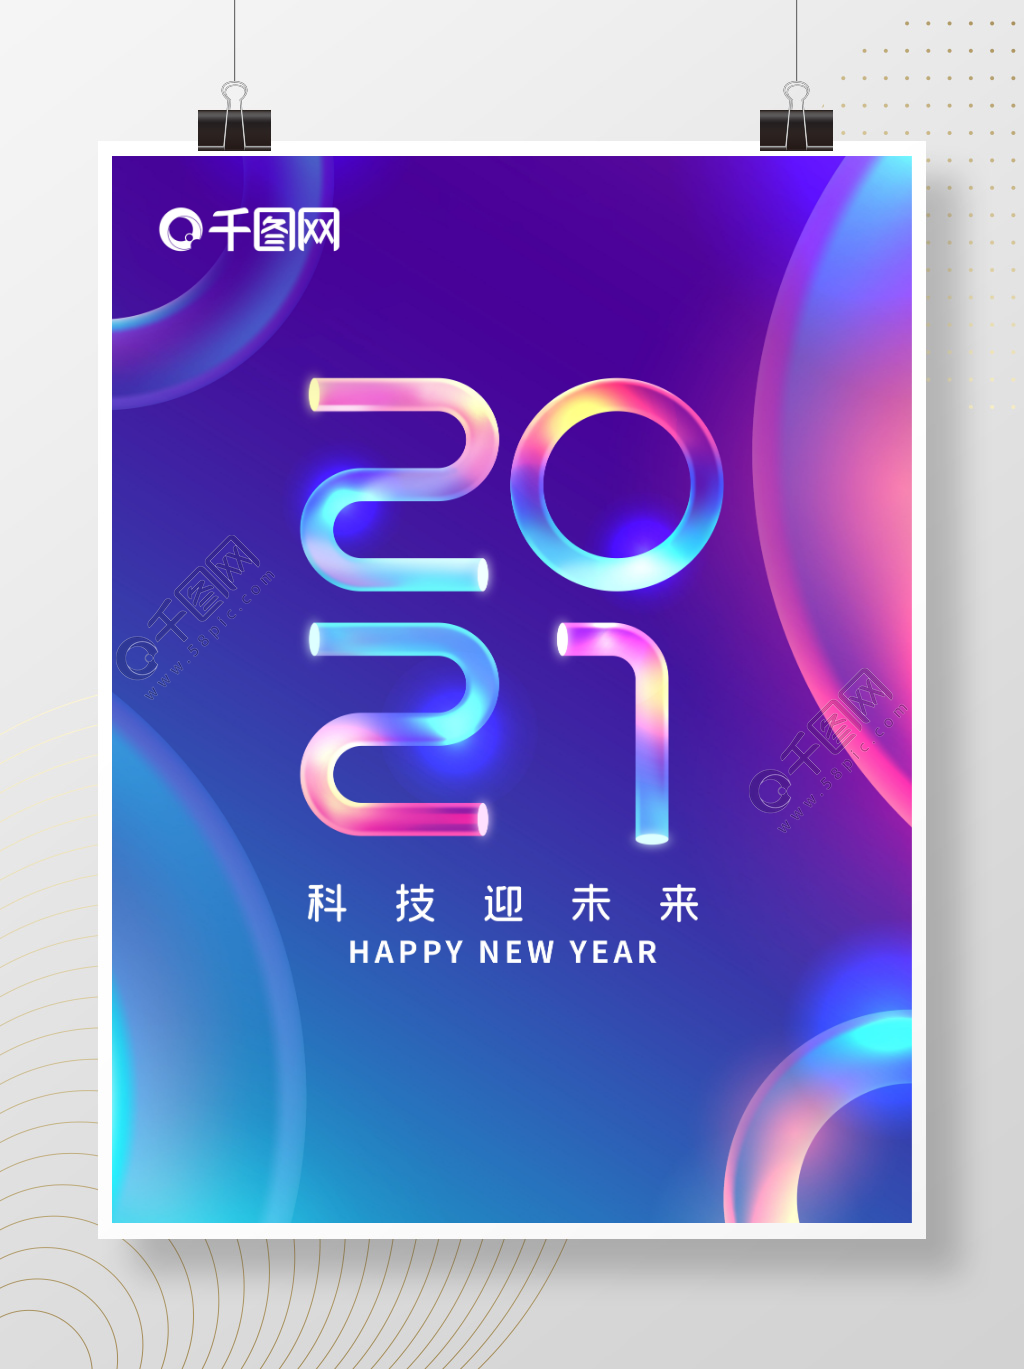 2021梦幻多彩字体设计新年海报-插入相册效果样式